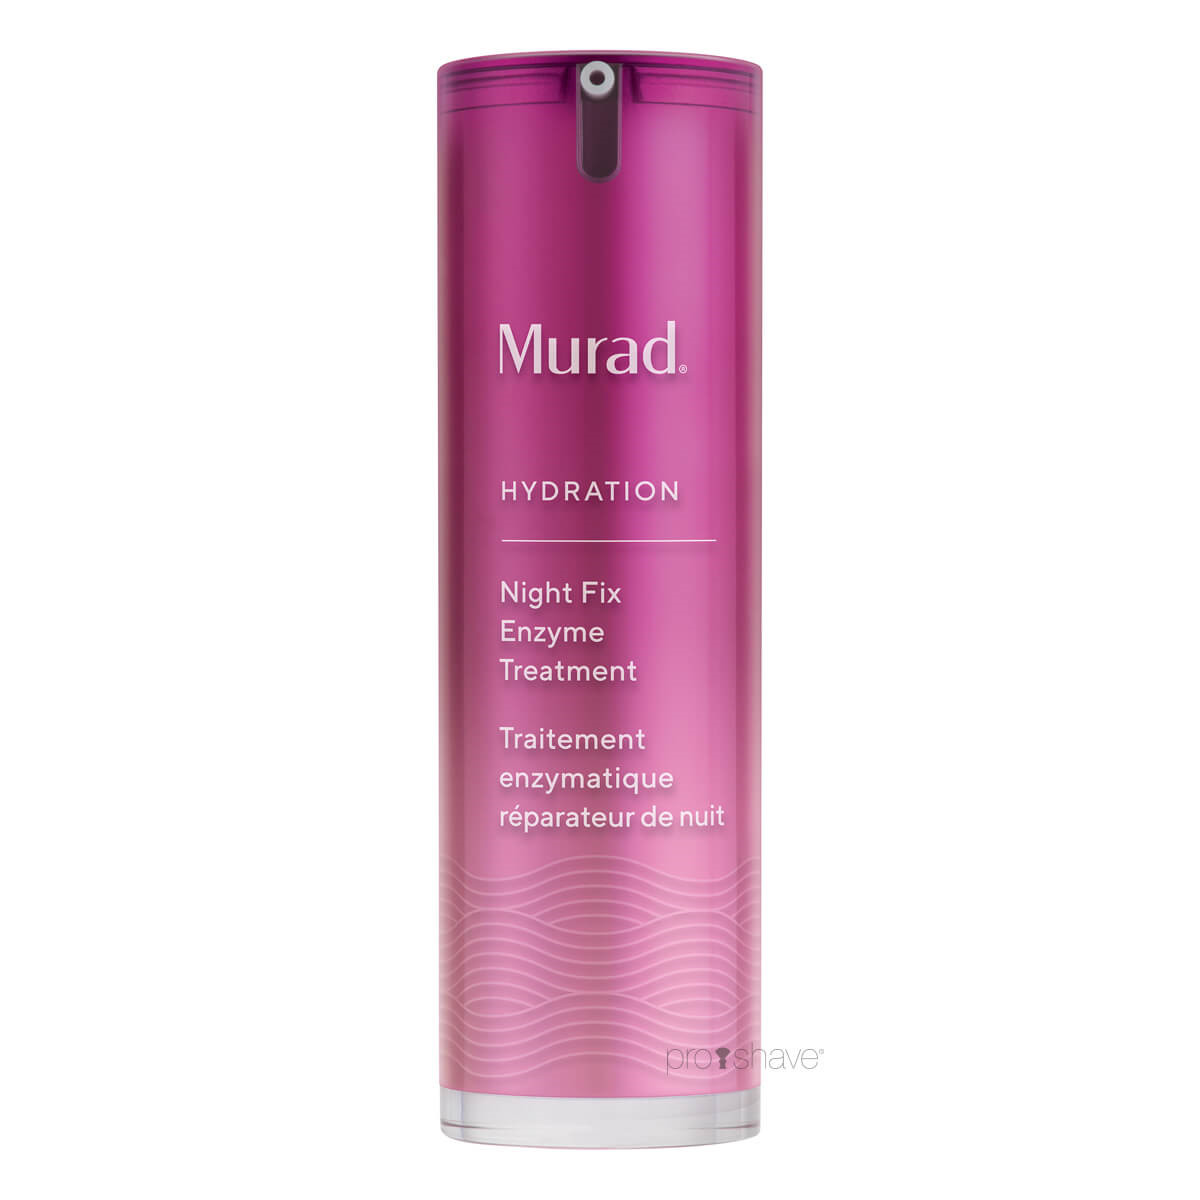 Murad Night Fix Enzyme Treatment, Hydration, 30 ml.